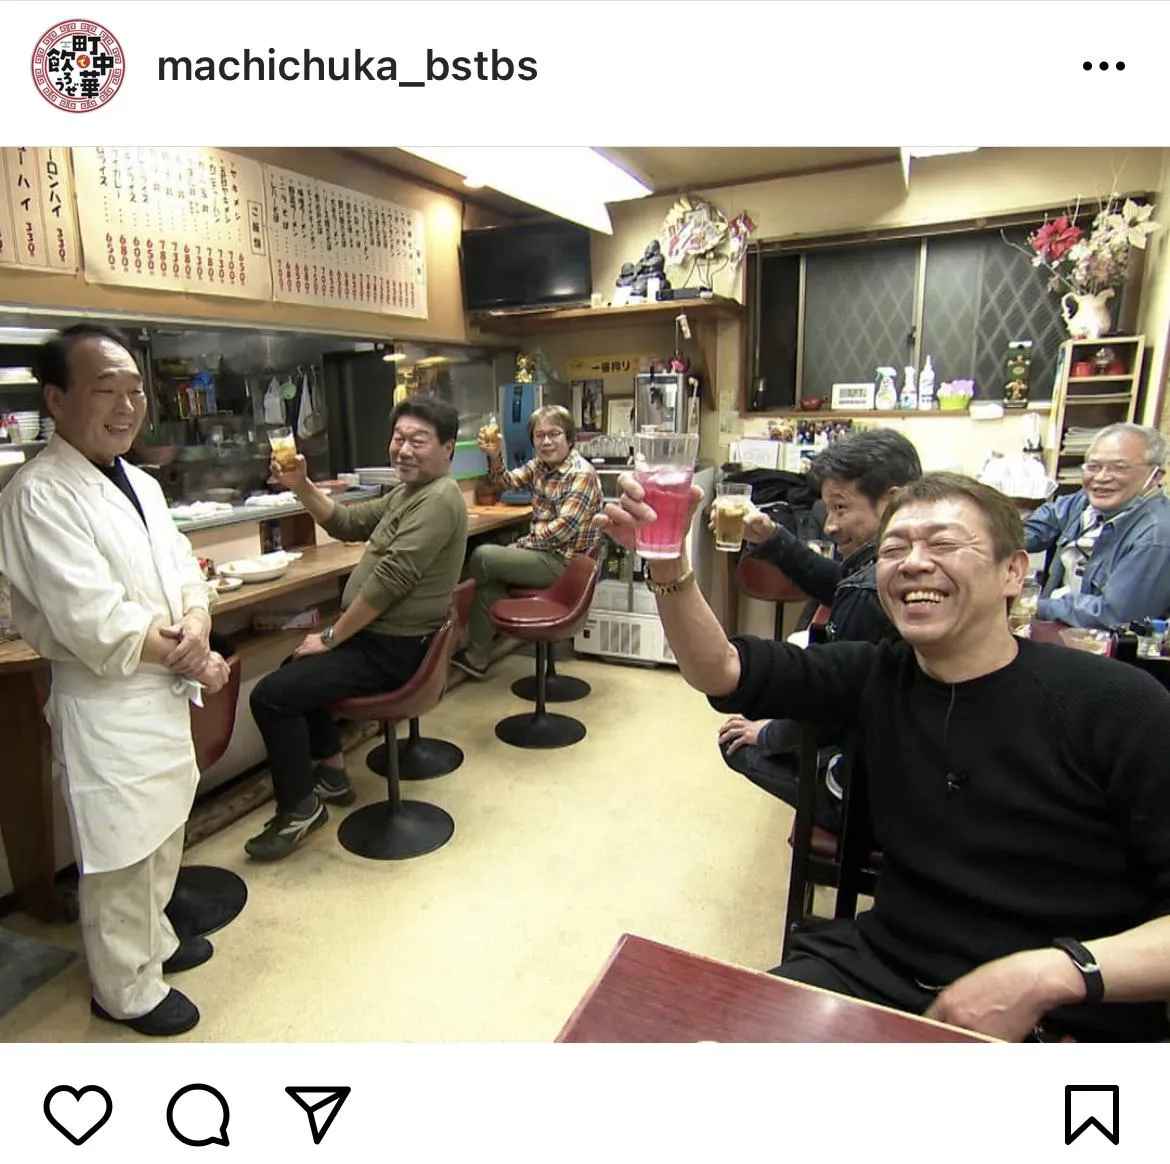 ※画像はBS-TBS 町中華で飲ろうぜ(machichuka_bstbs)公式Instagramのスクリーンショット